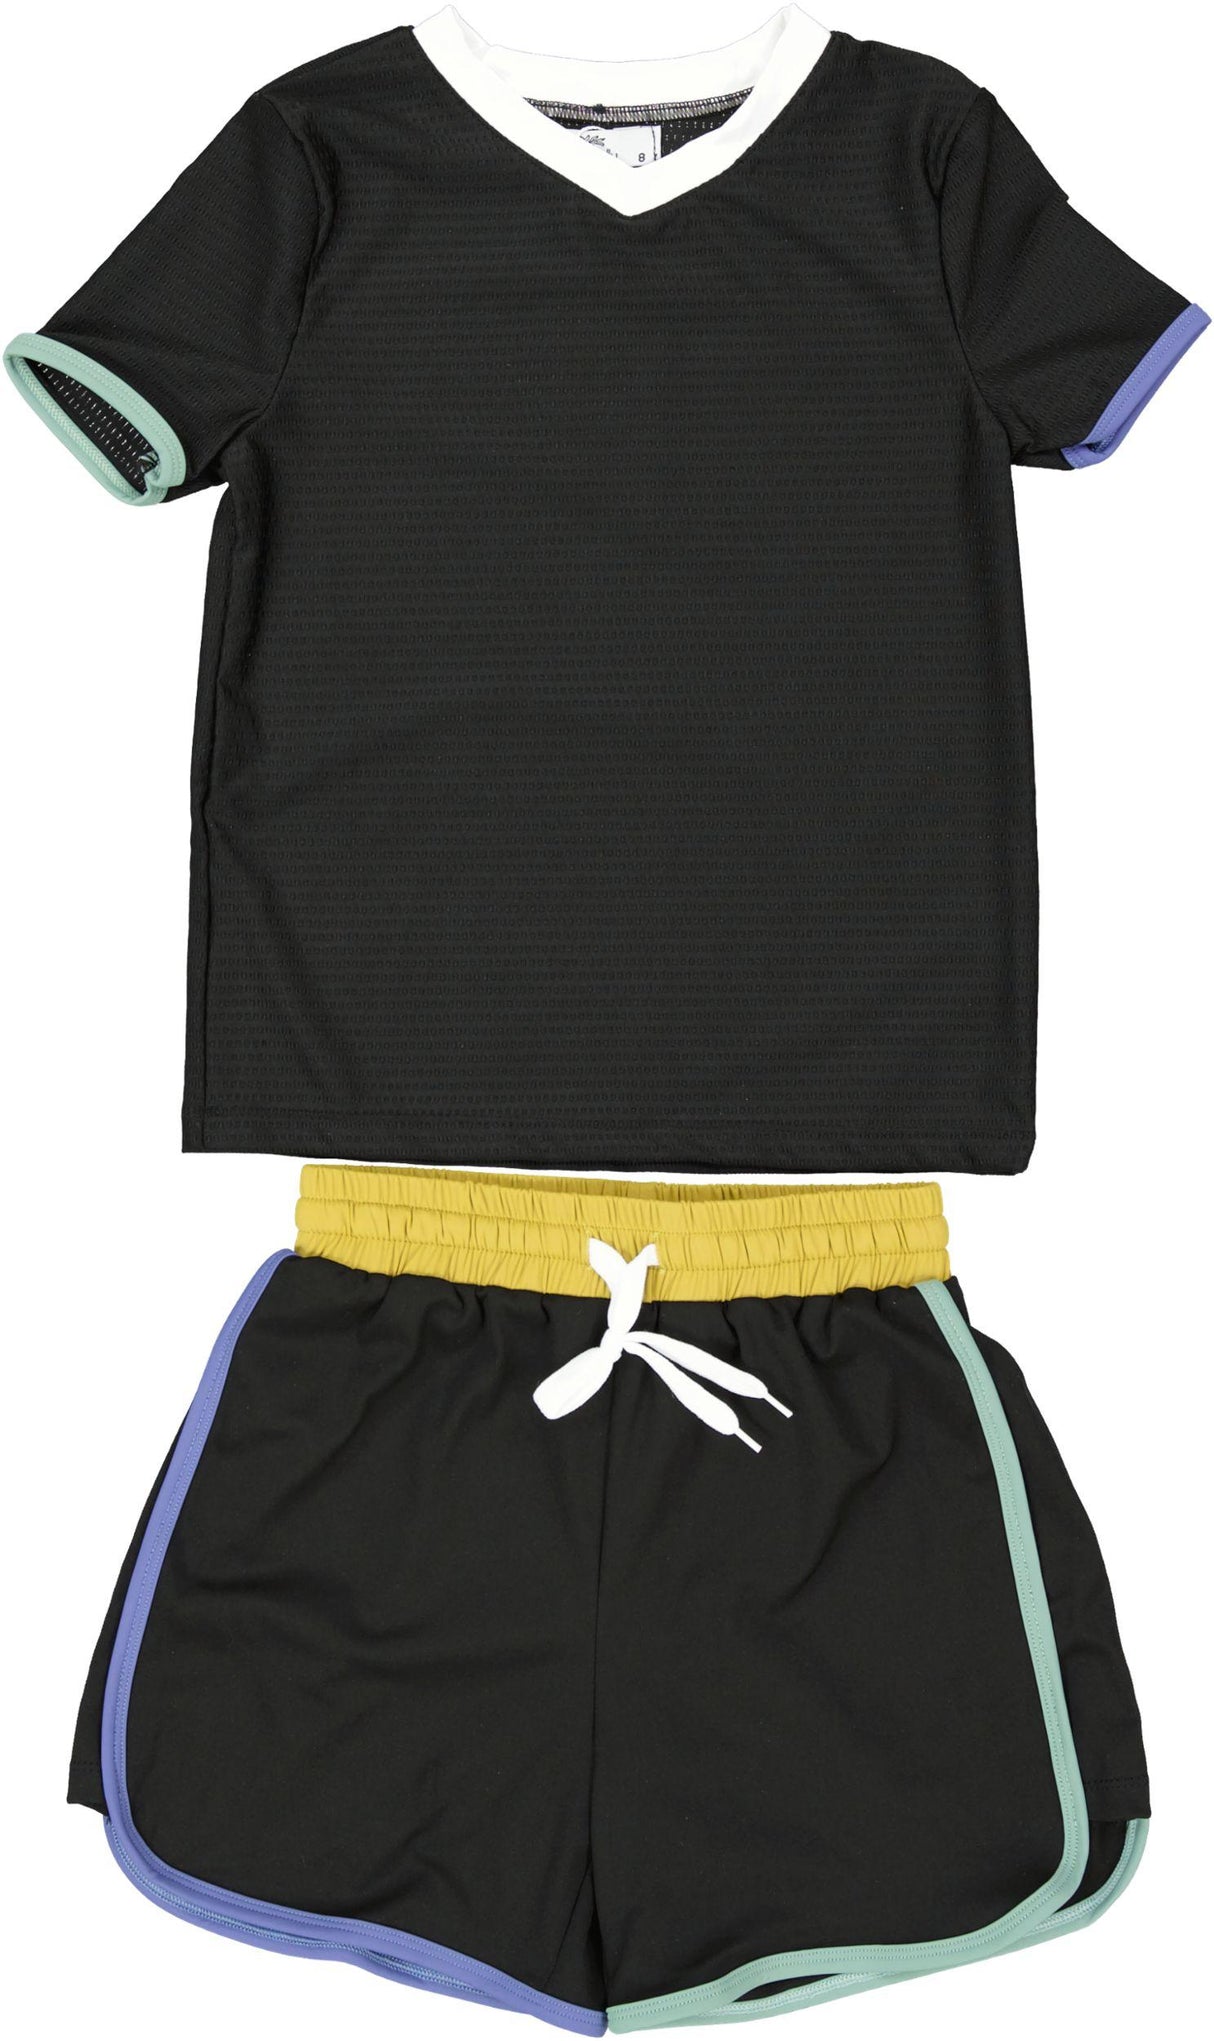 Doodlu Boys Colored Trim Bathing Suit & Shirt Set - BST-1202